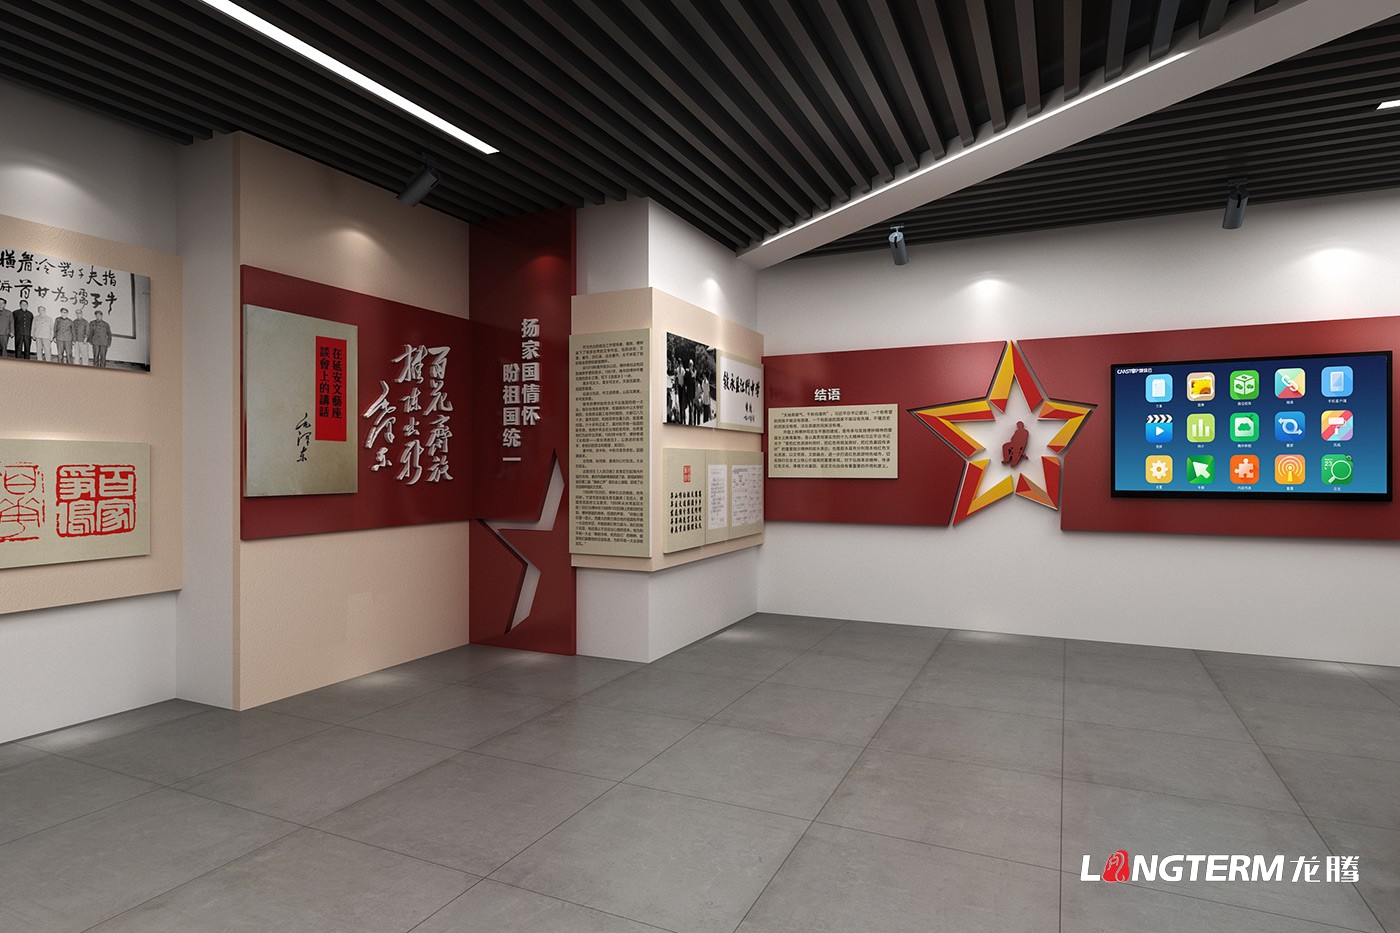 傅钟同志革命精神展馆设计效果图_傅钟纪念馆红色文化建设